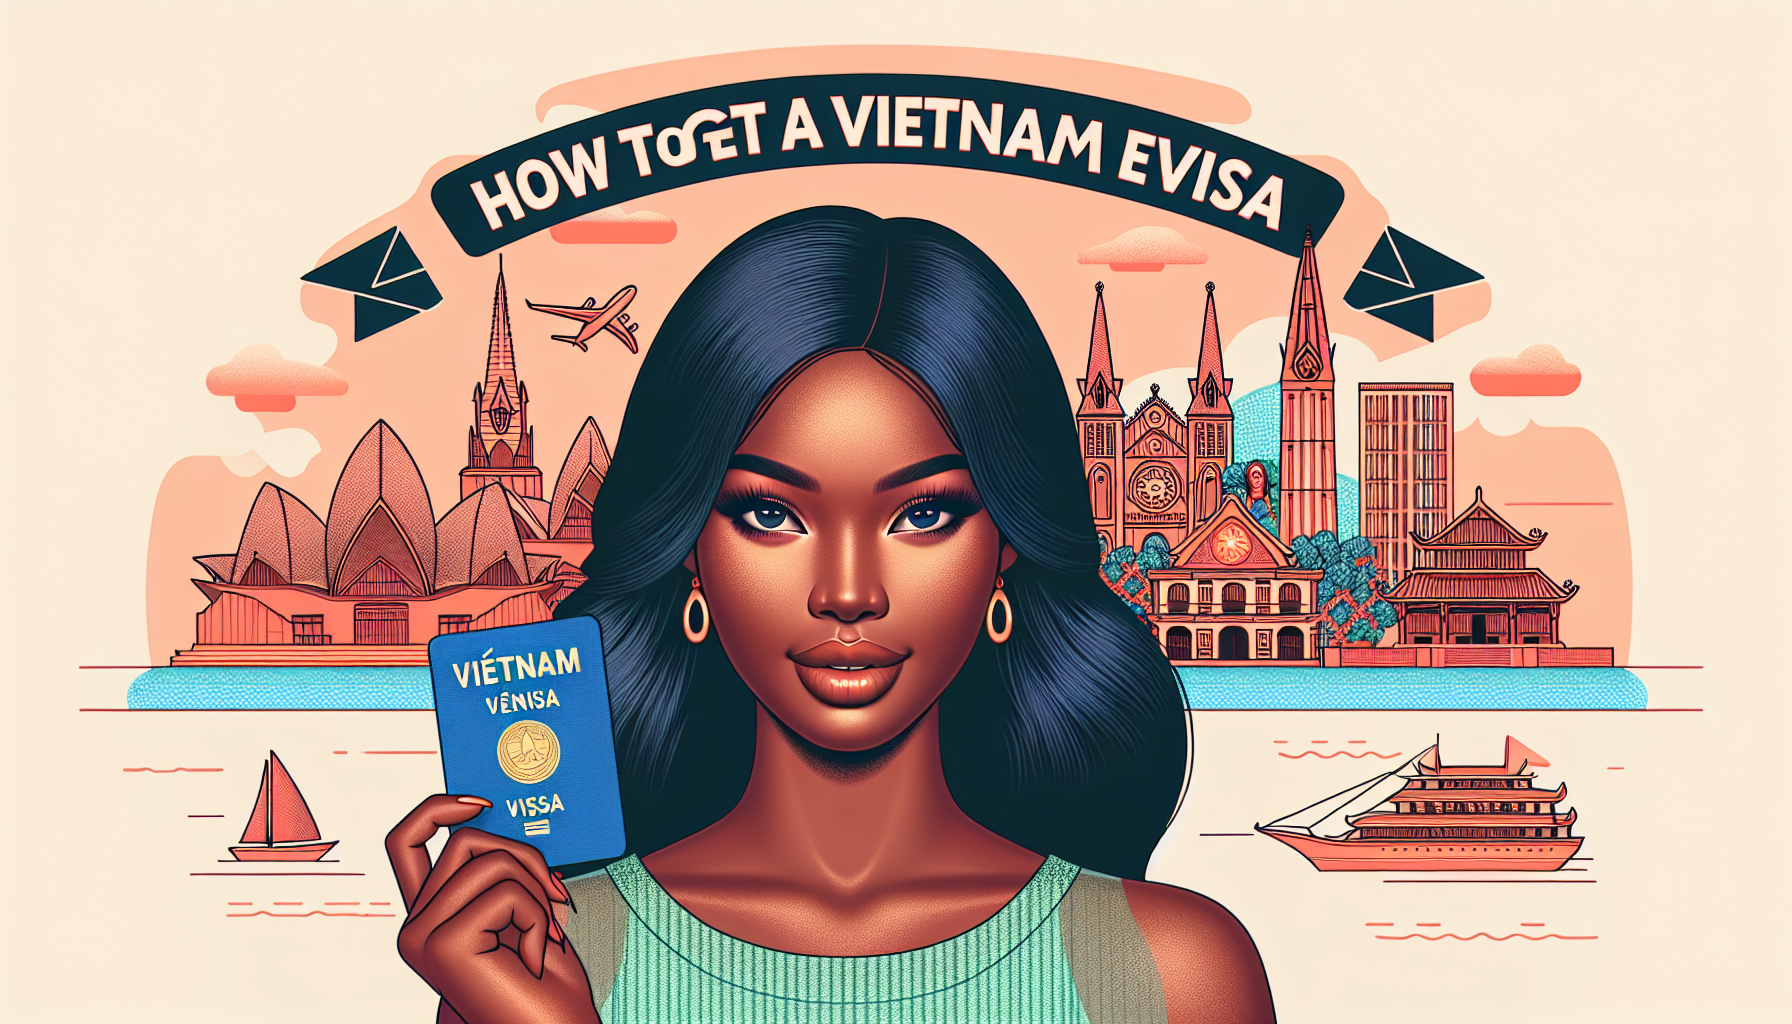 Vietnam Evisa for Citizens from Ouagadougou